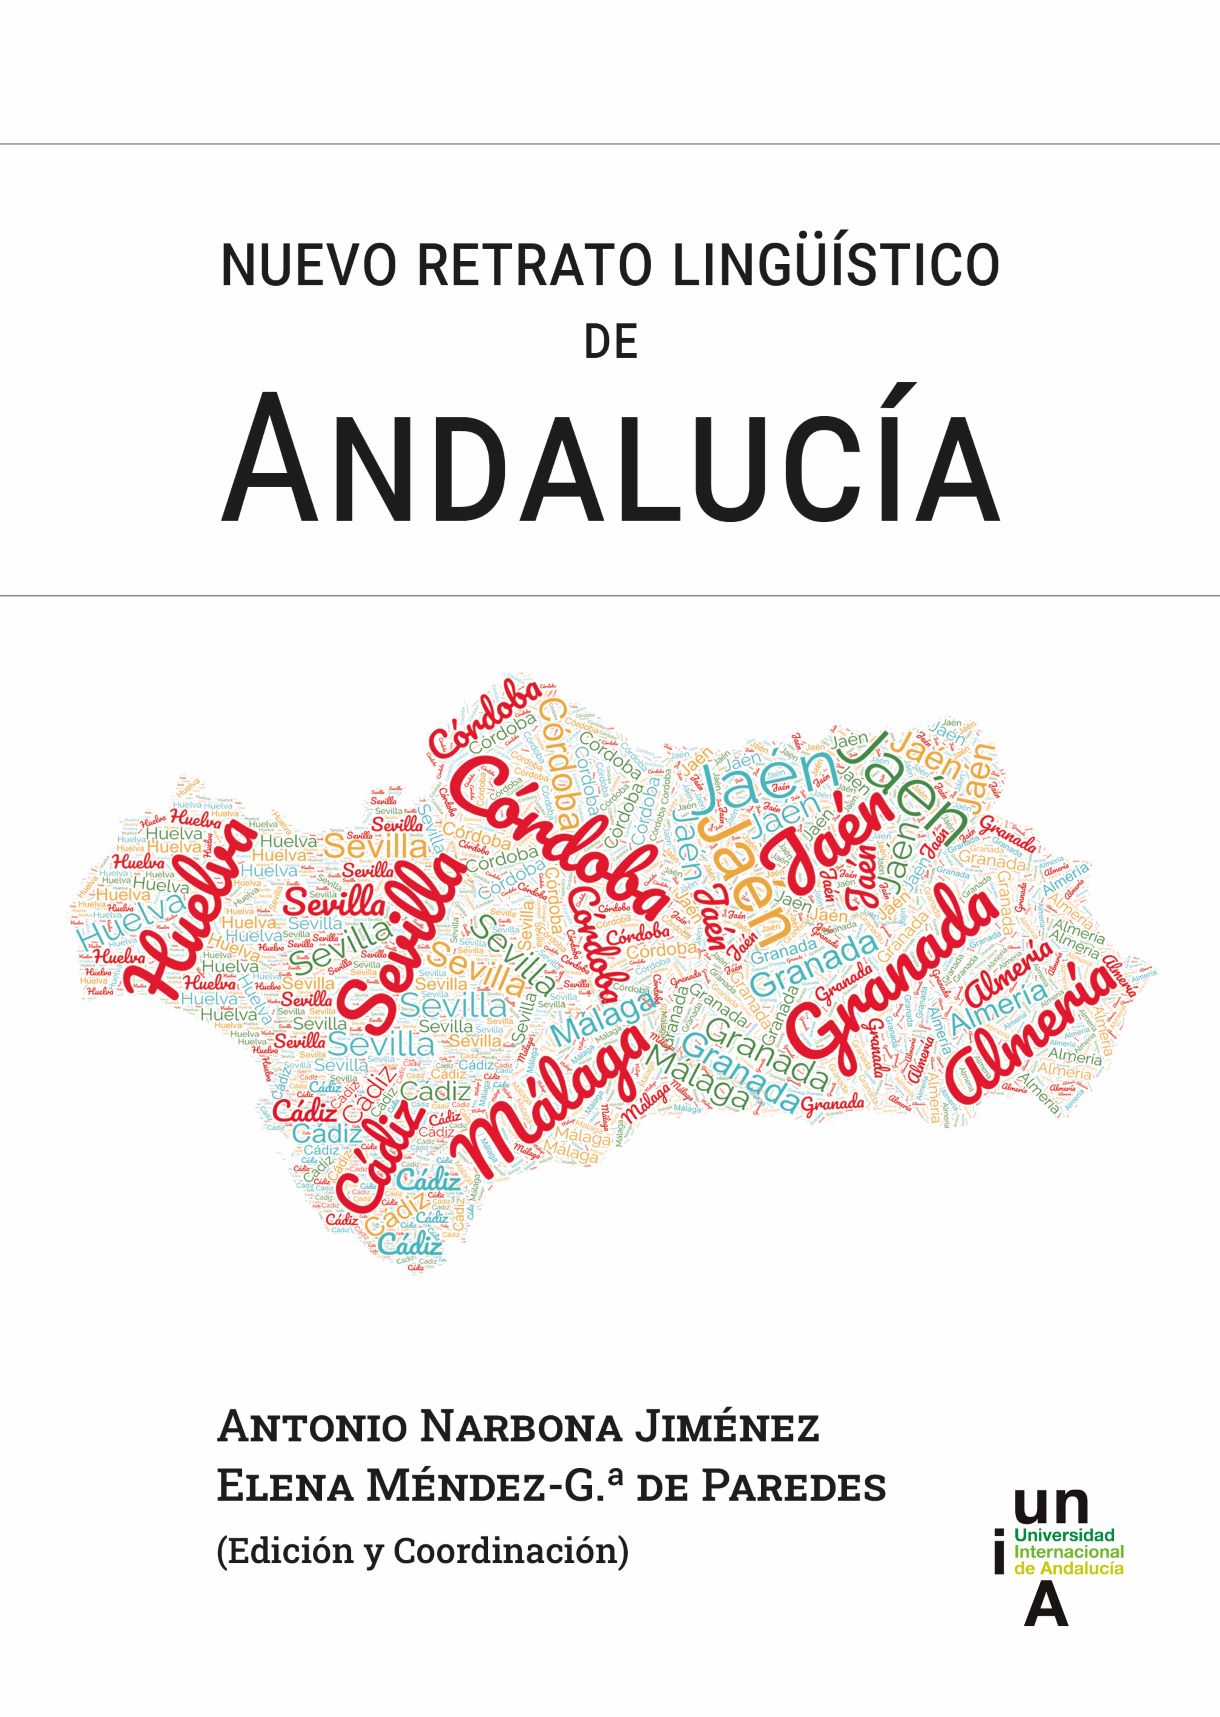 Imagen de portada del libro Nuevo retrato lingüístico de Andalucía